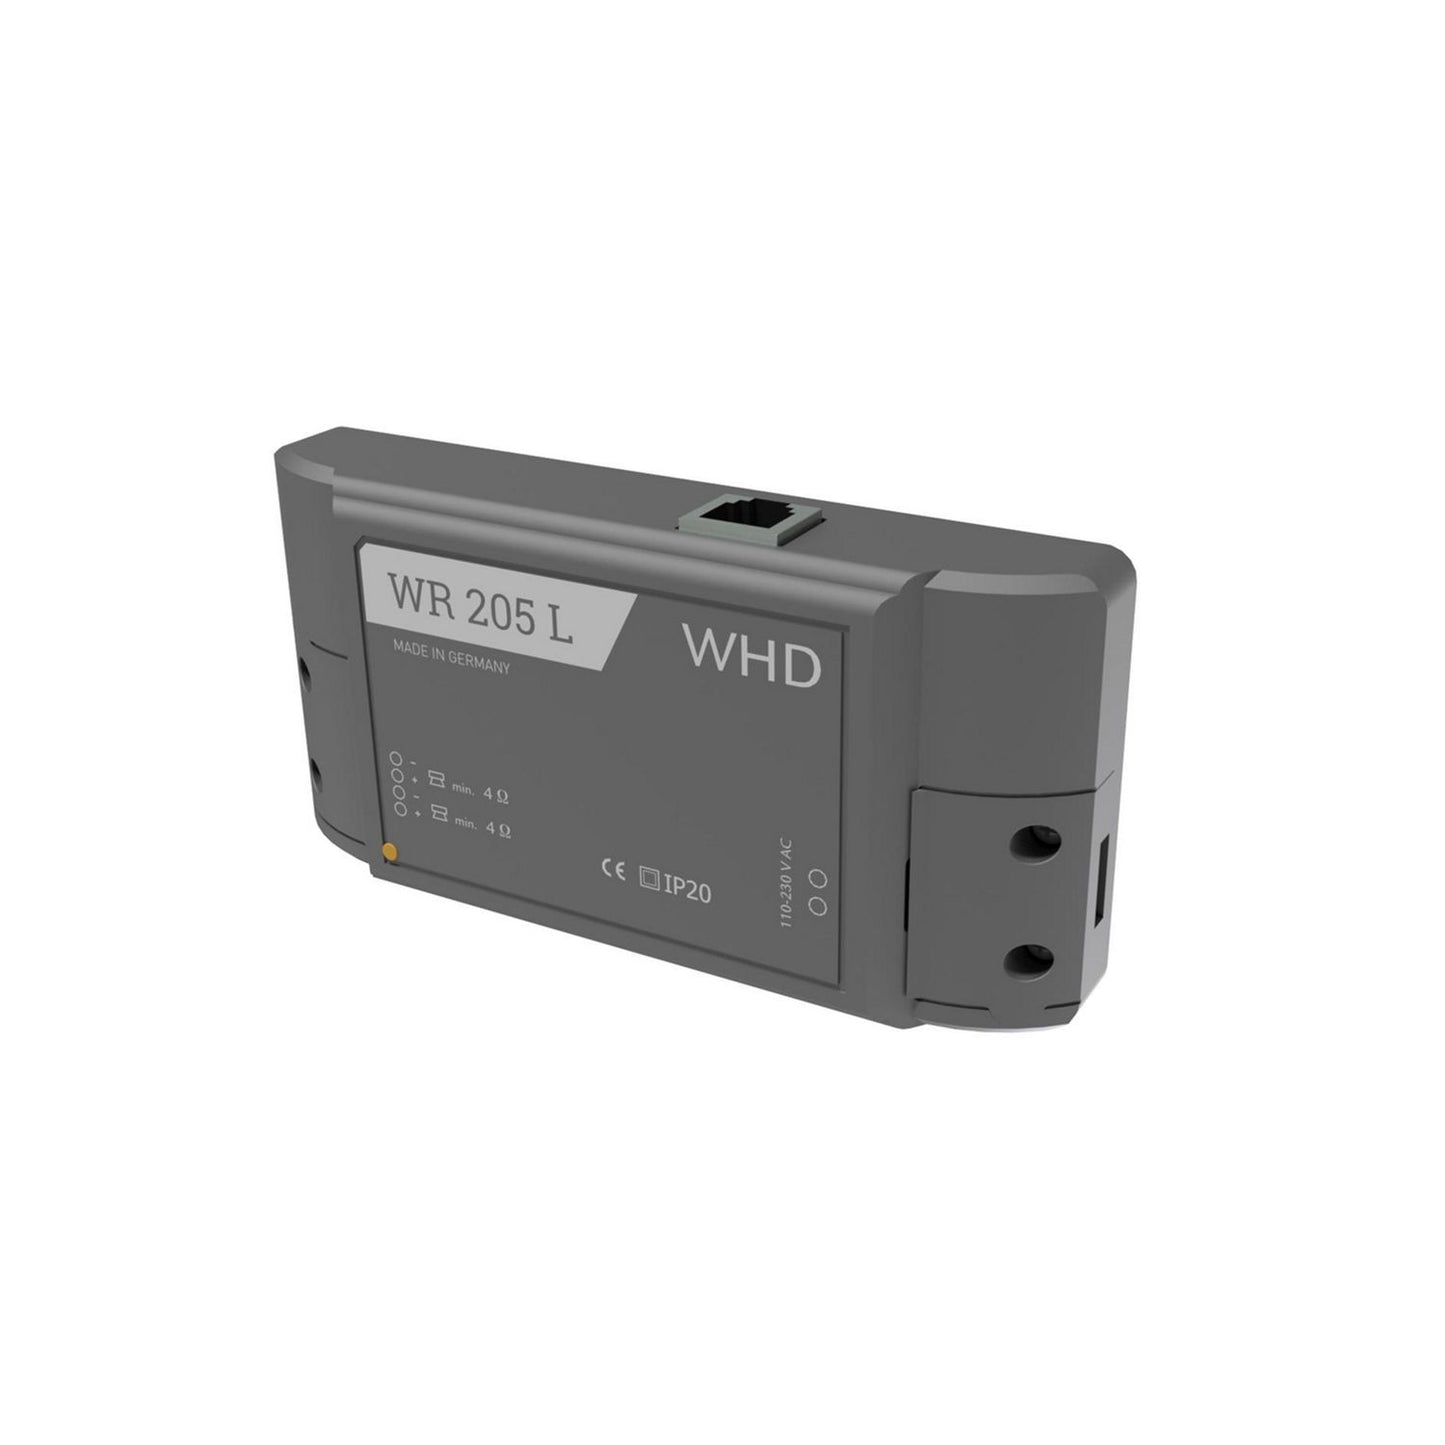 WHD WR 205 L Bluetooth-/ WLAN-Audioempfänger mit Stereo-Verstärker, schwarz